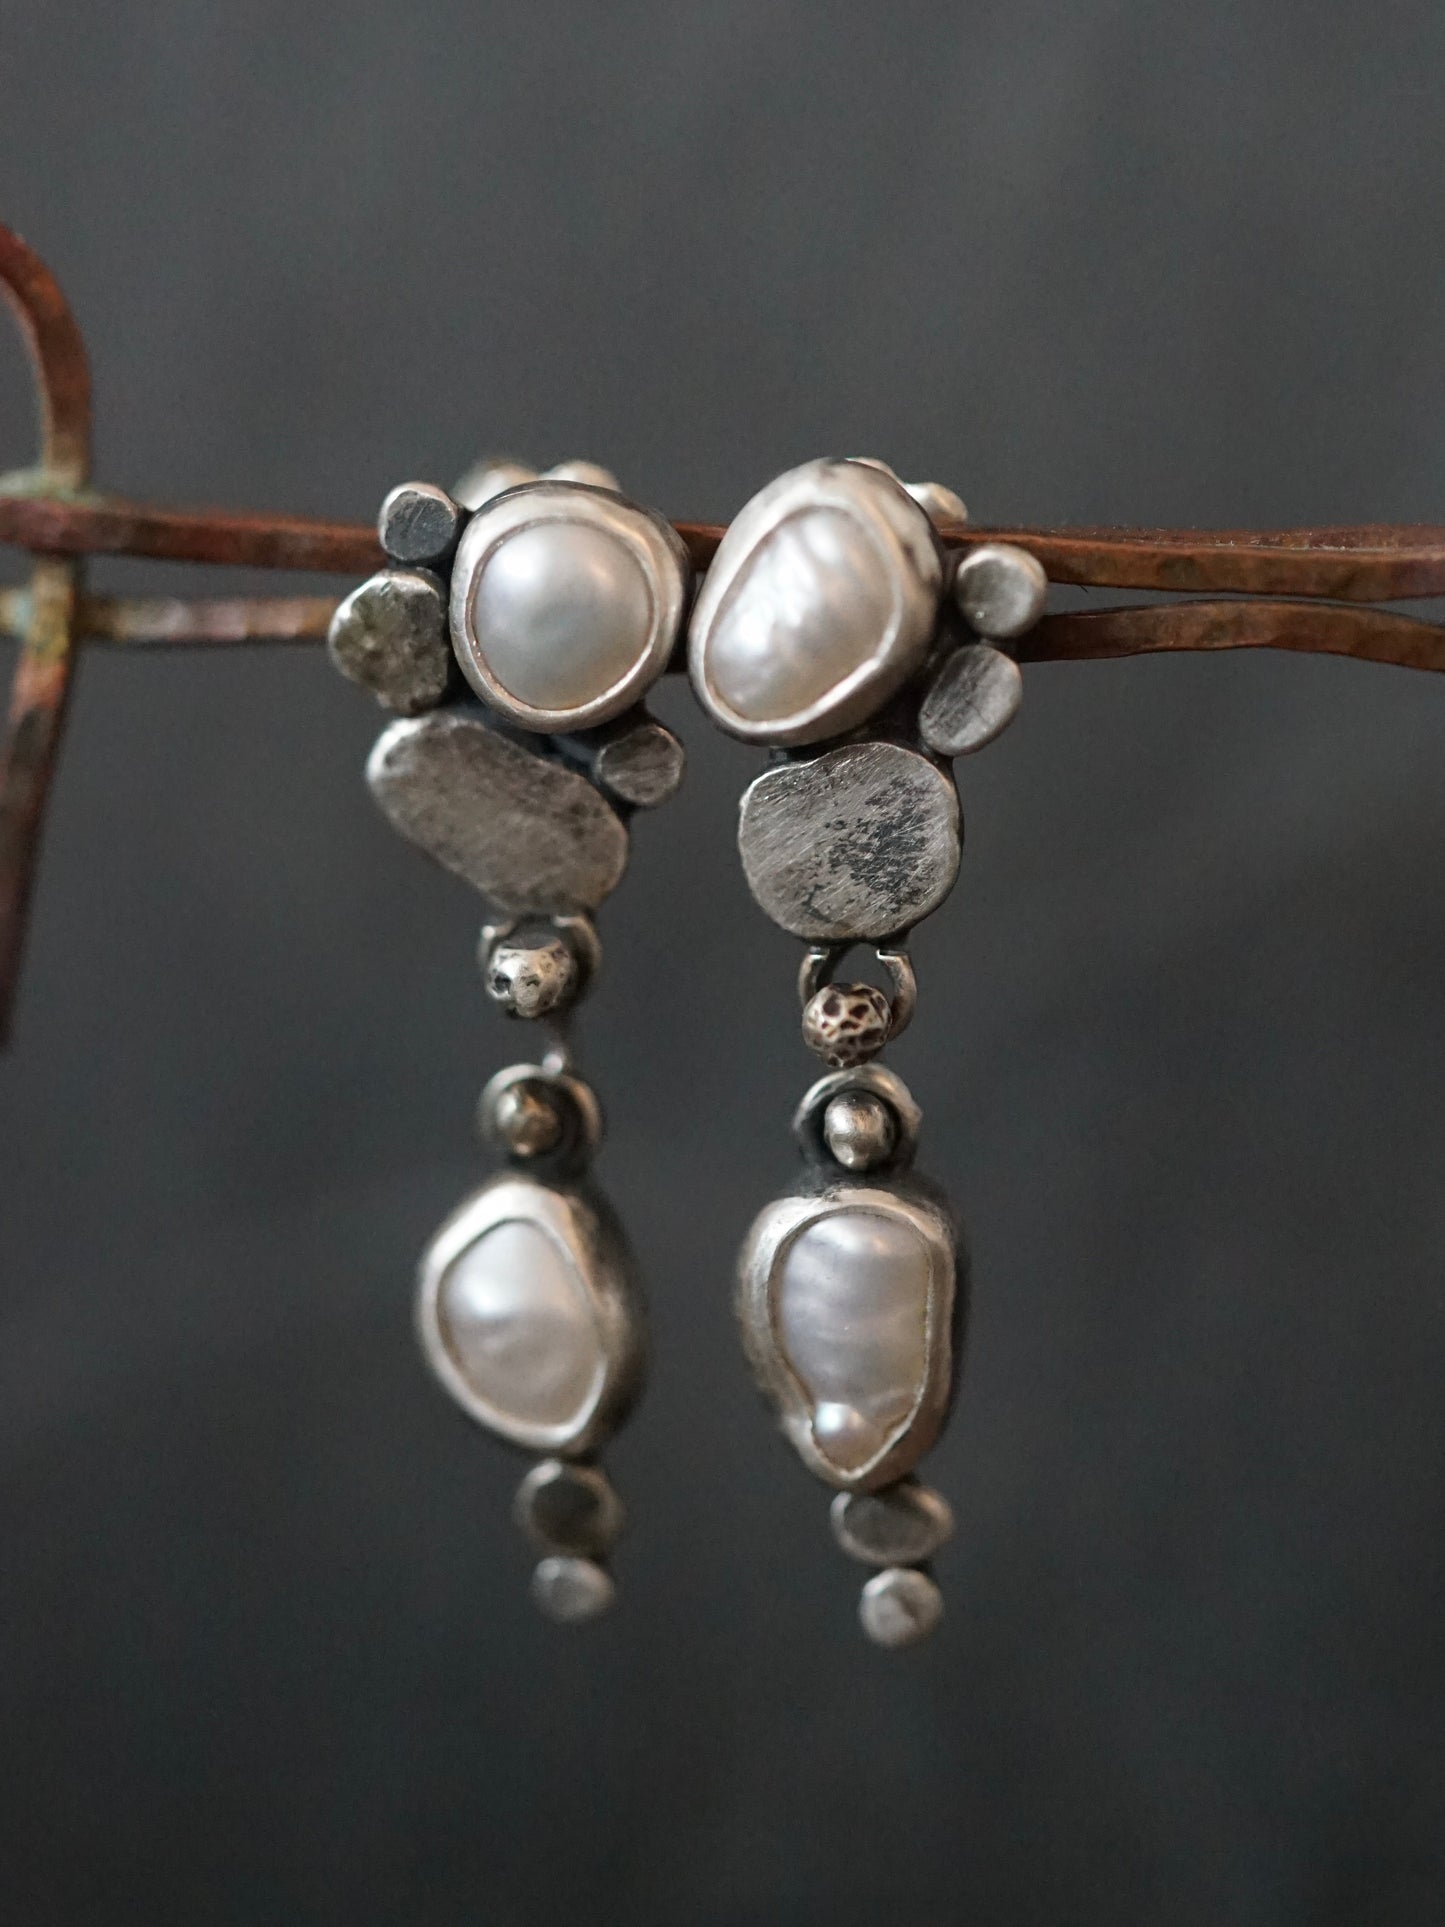 Winter Pearl earrings